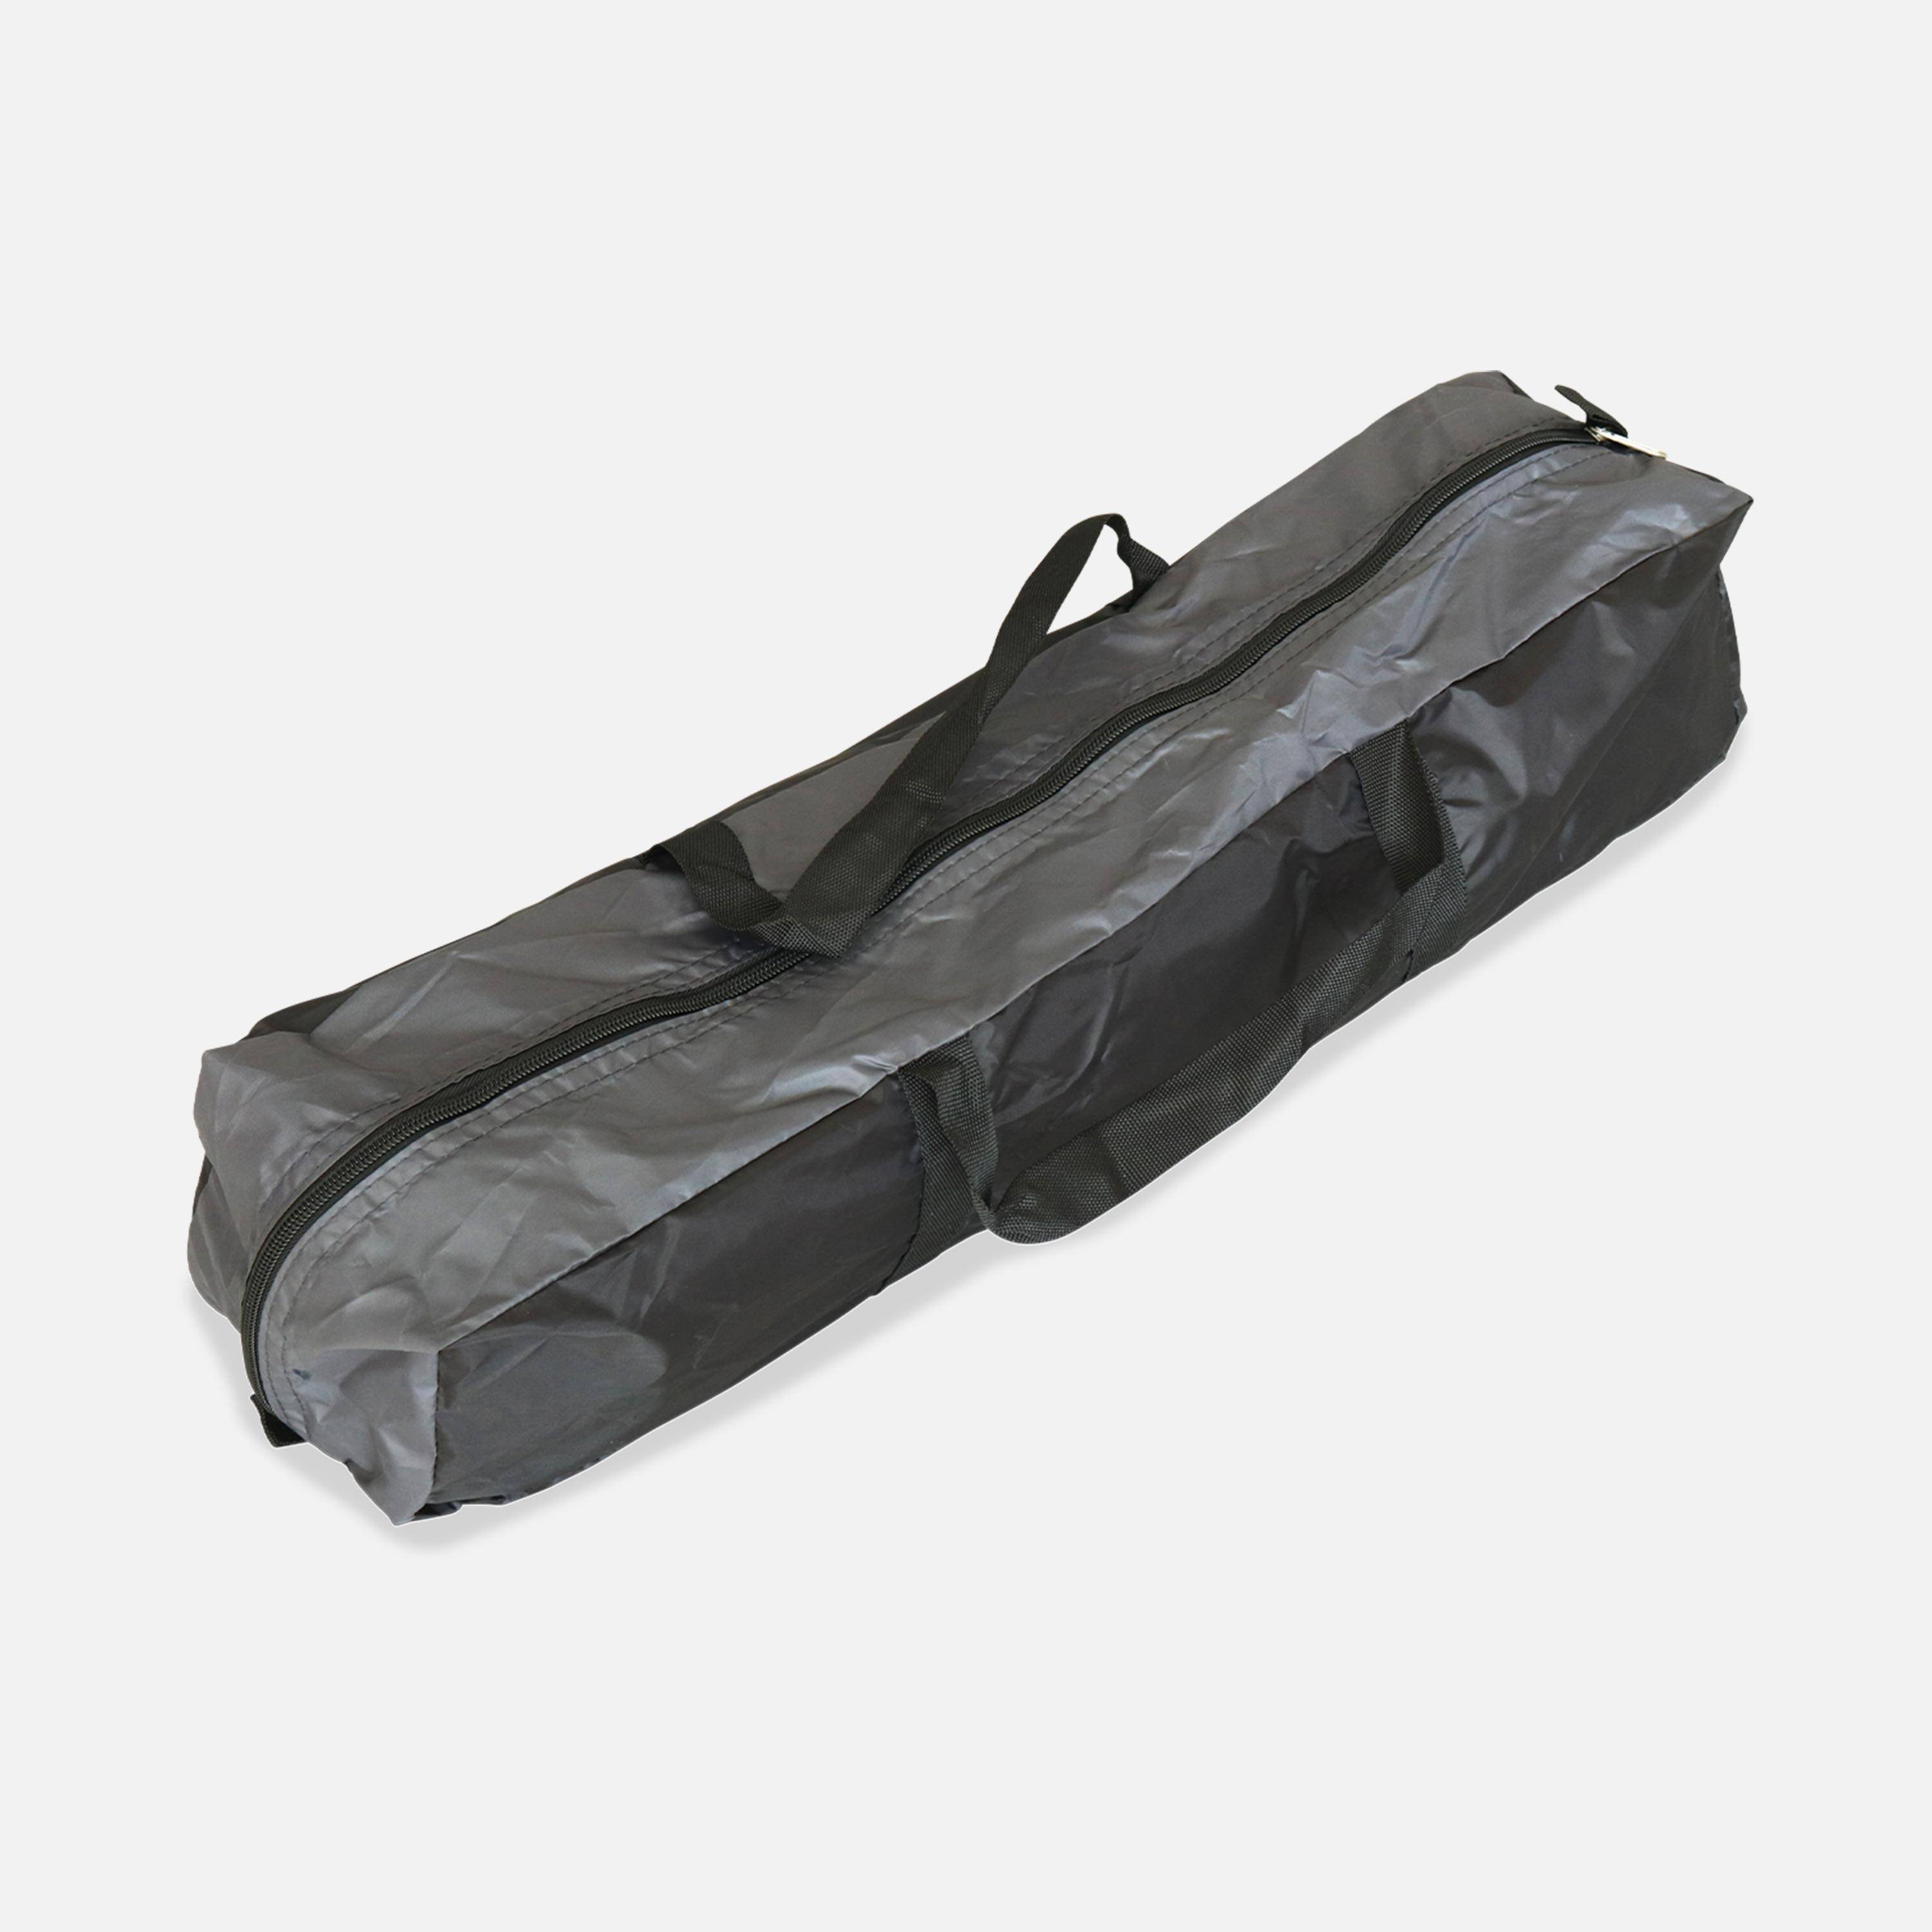 Trampoline 250cm gris avec pack d'accessoires + Tente de camping avec sac de transport,sweeek,Photo8